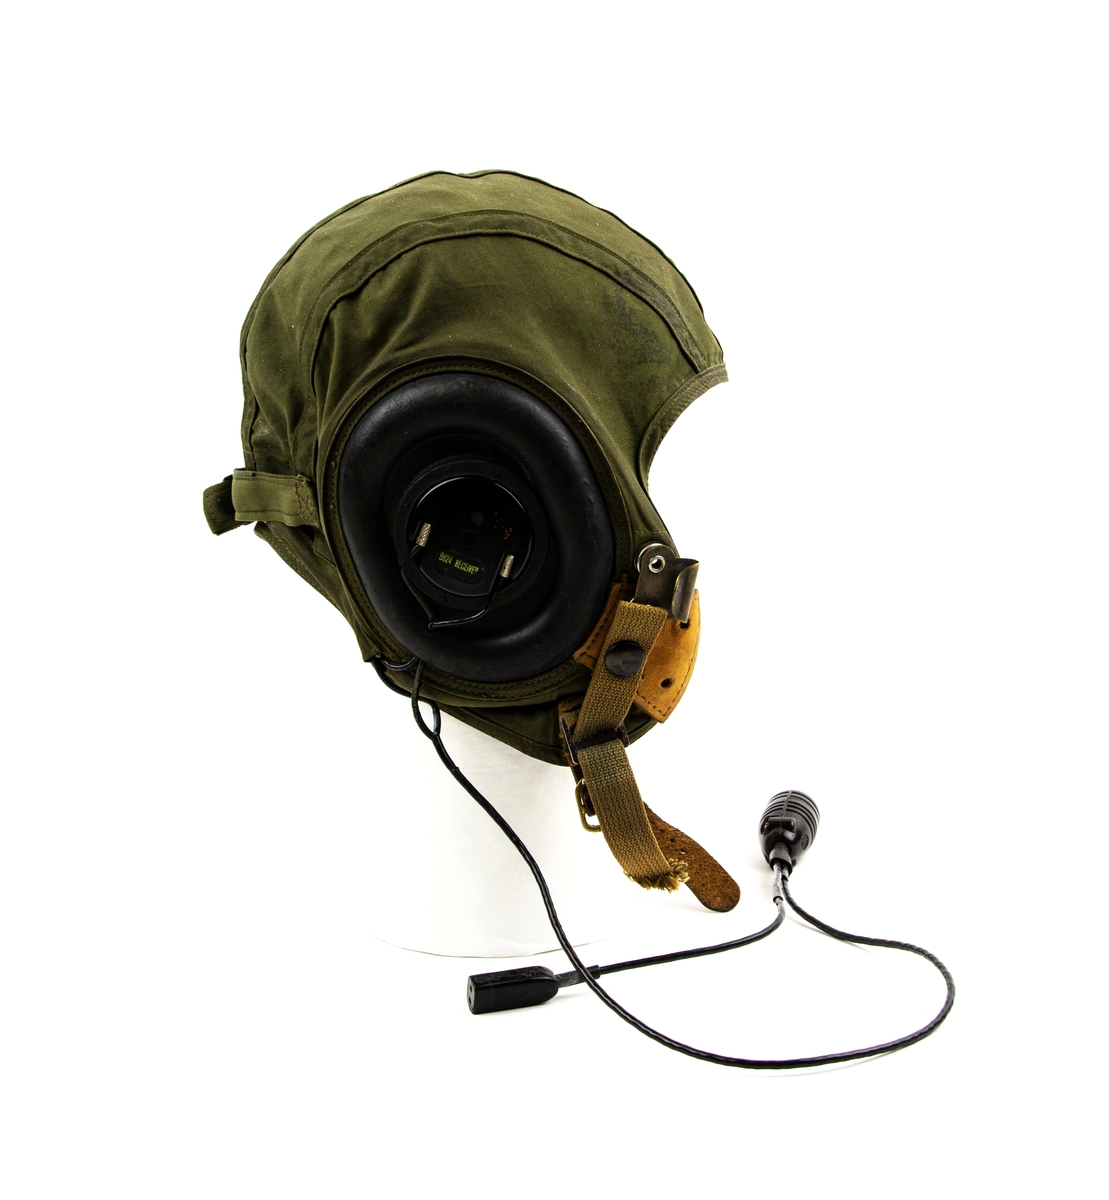 Flyghuva utförd i grönt tyg med gummiskydd för öronen. Med radiomottagare (9824) och kabel. Hakrem i läder som knäpps med spännen. Insida fastsydd blå textiletikett med gul text "MEDIUM".